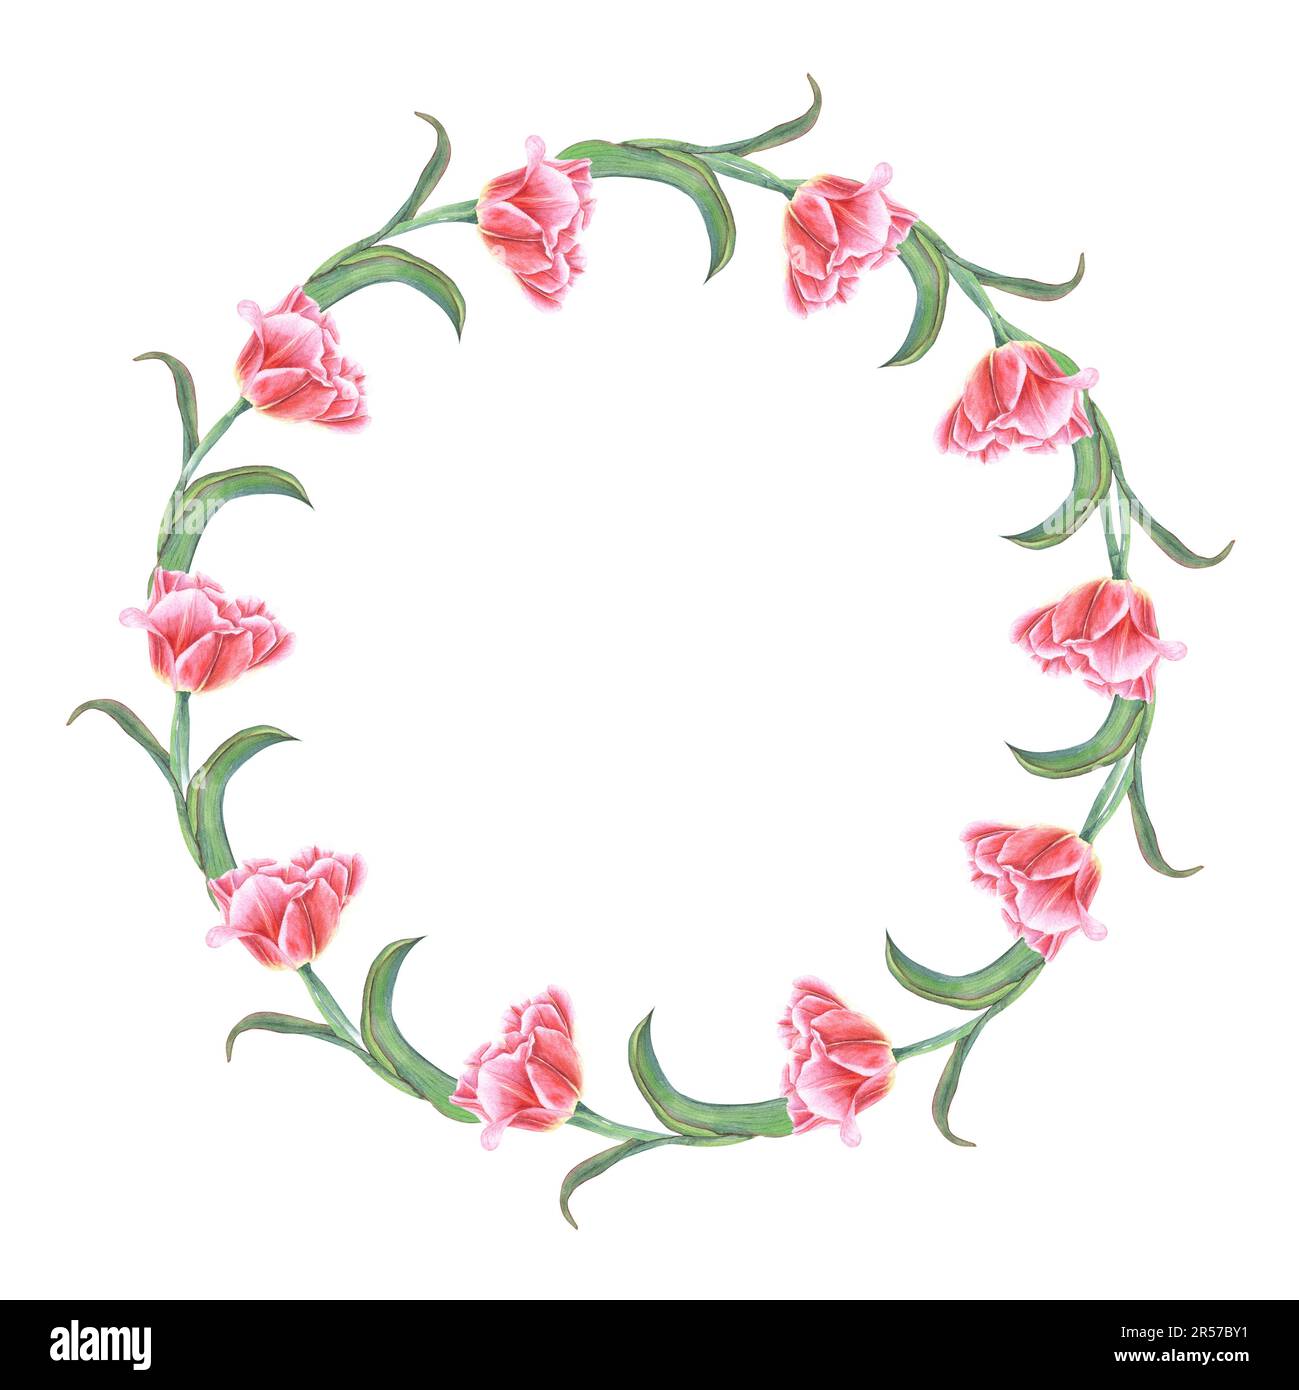 Aquarelle Tulpenscheide auf weißem Hintergrund isoliert. Botanische Illustration zum Erstellen von Postkartendesign, Einladungsvorlage Stockfoto